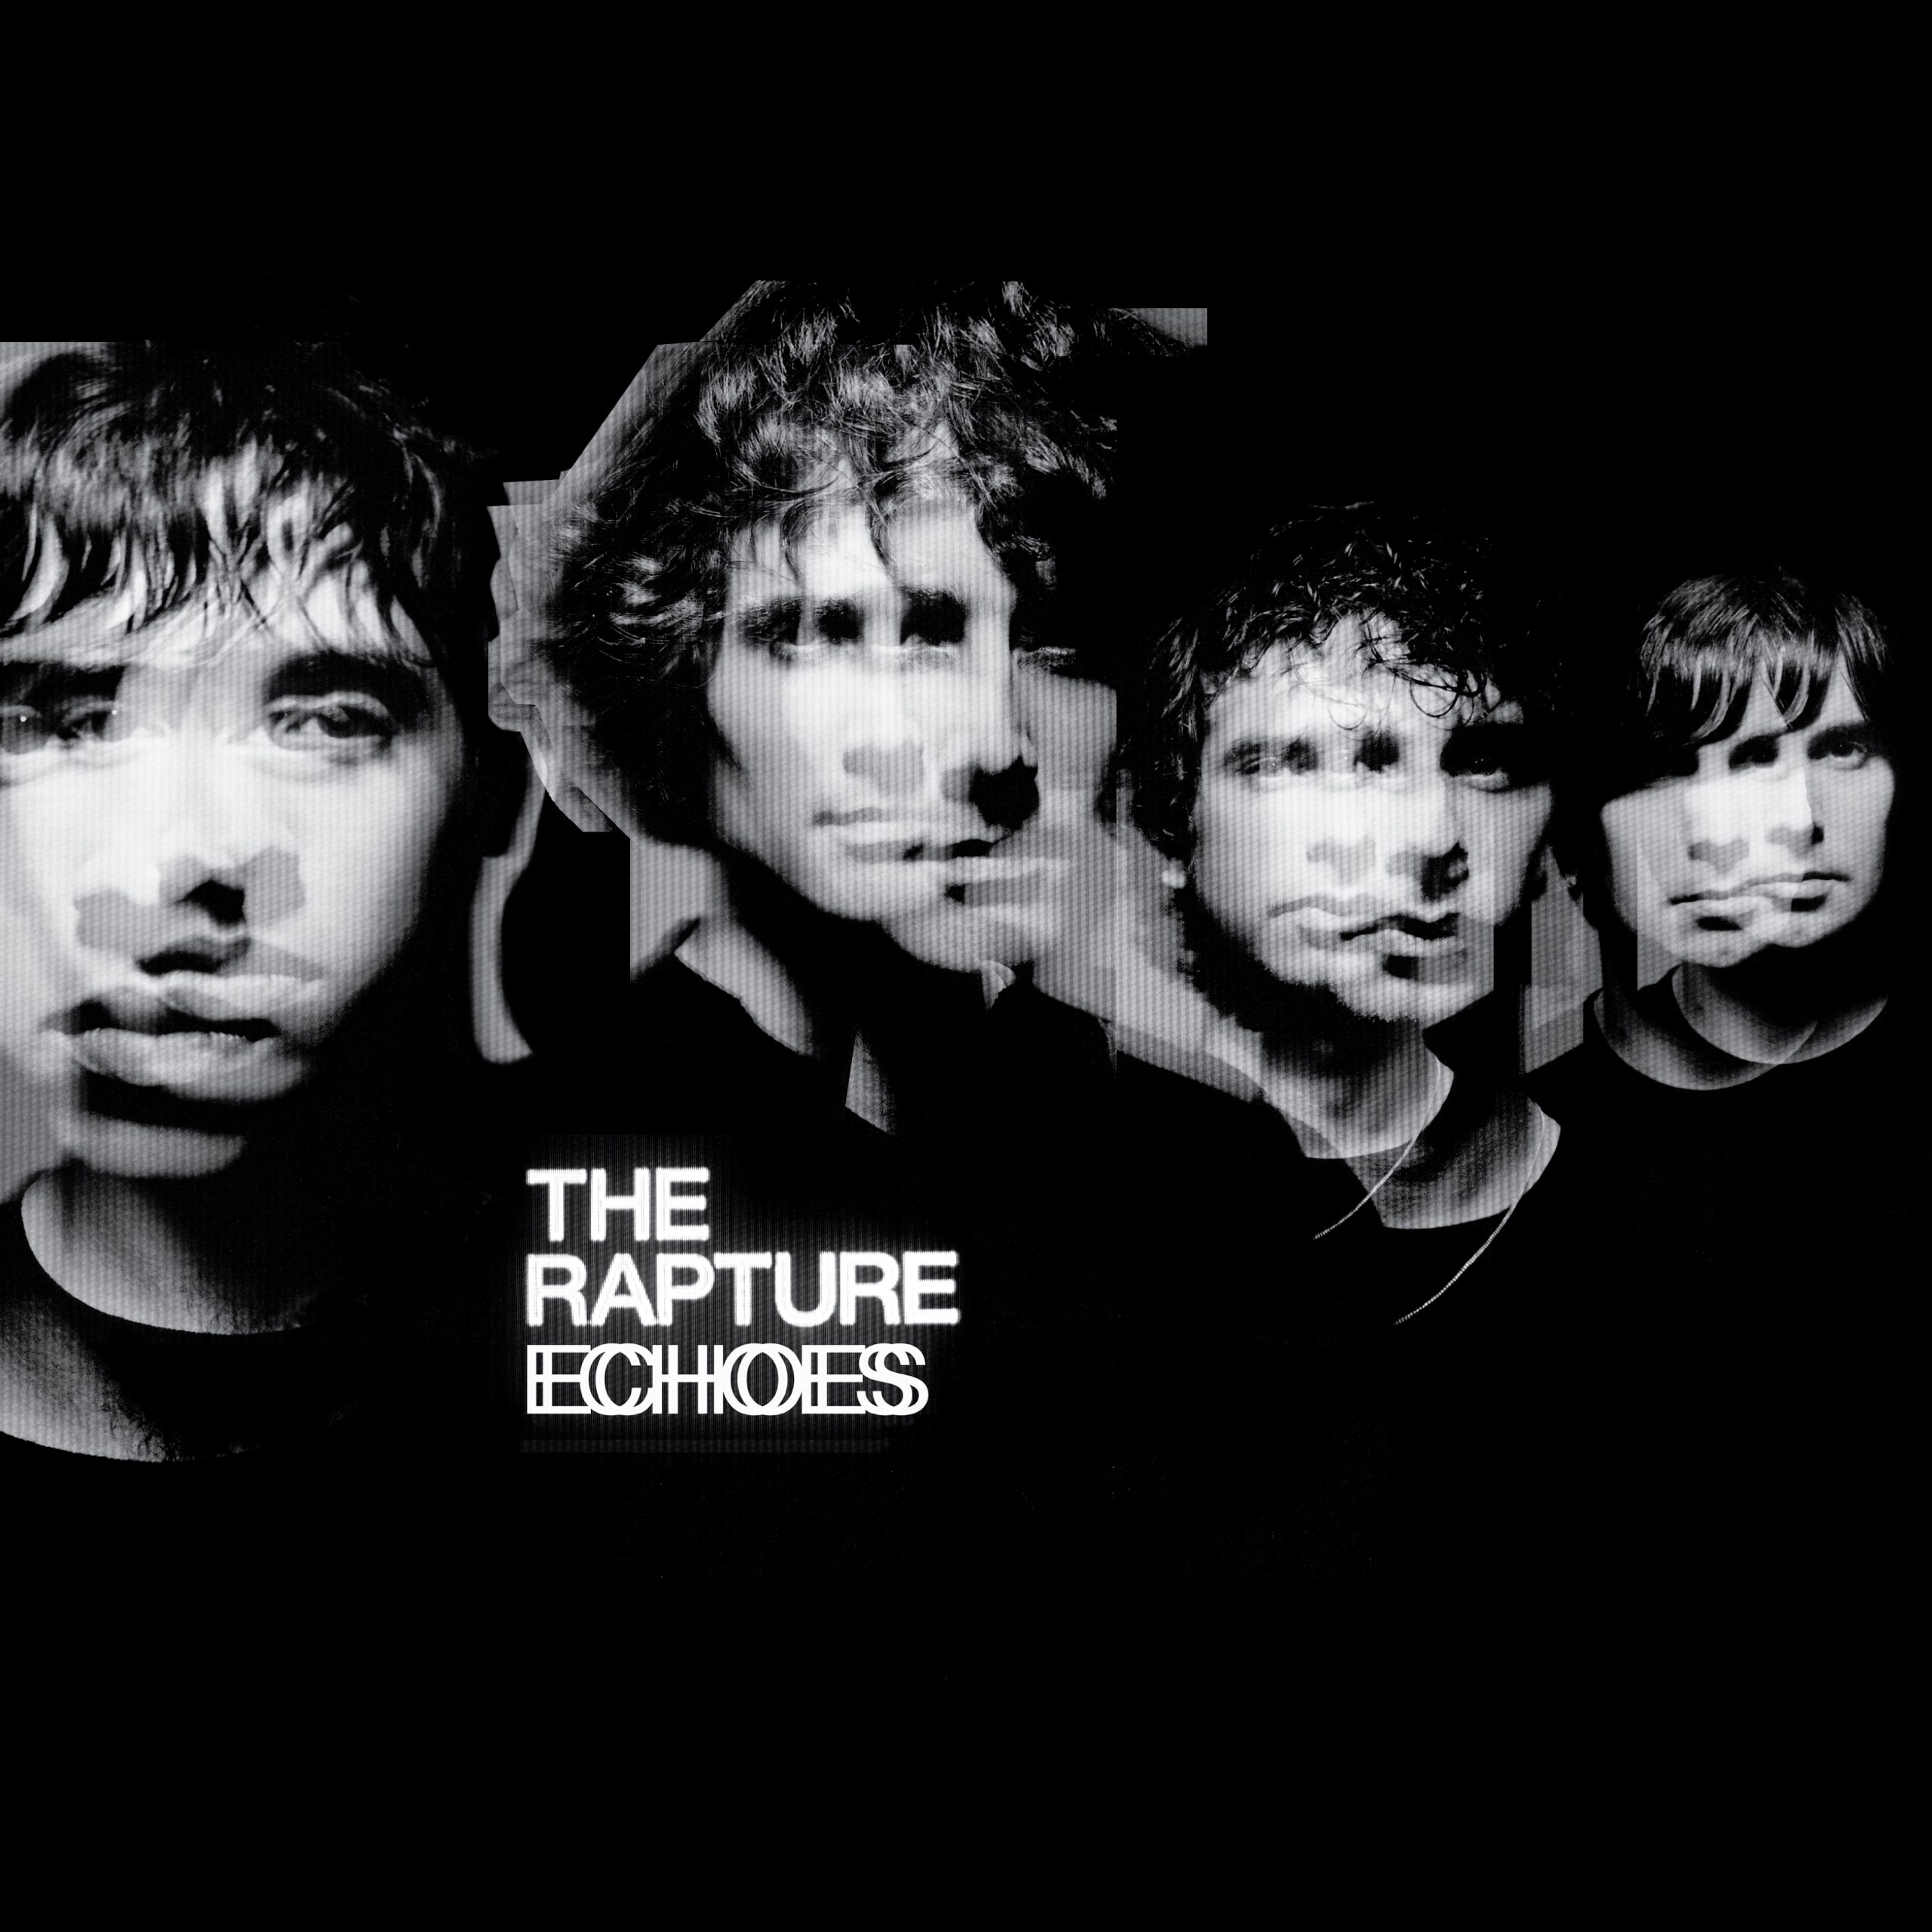 The Rapture "Echoes" LP